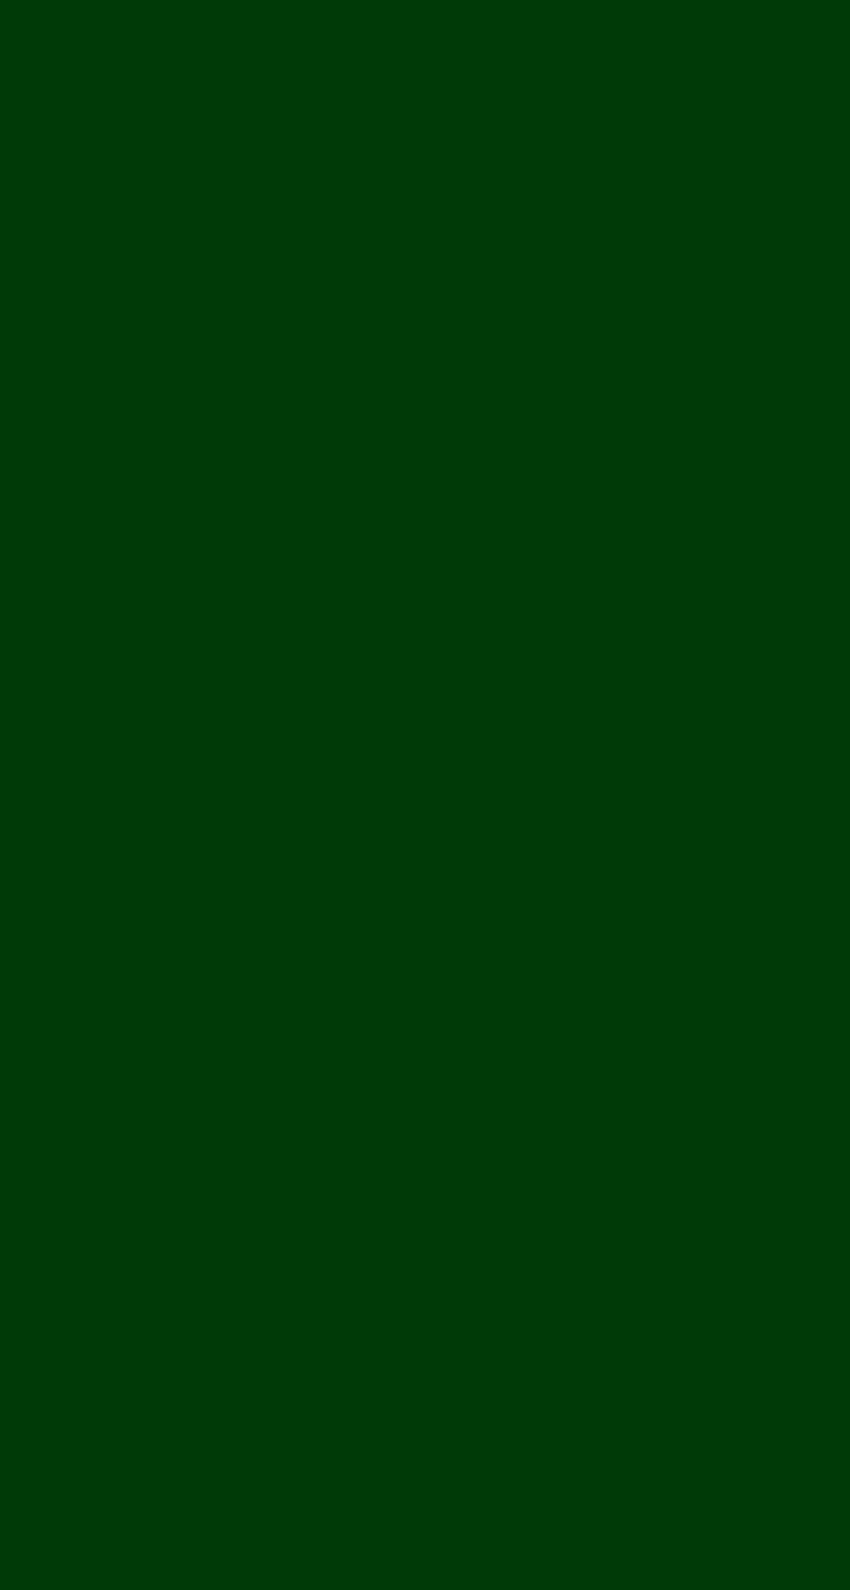 무즈타바 . 단색 배경, 녹색, 녹색 배경, 밝은 녹색 일반 HD 전화 배경 화면